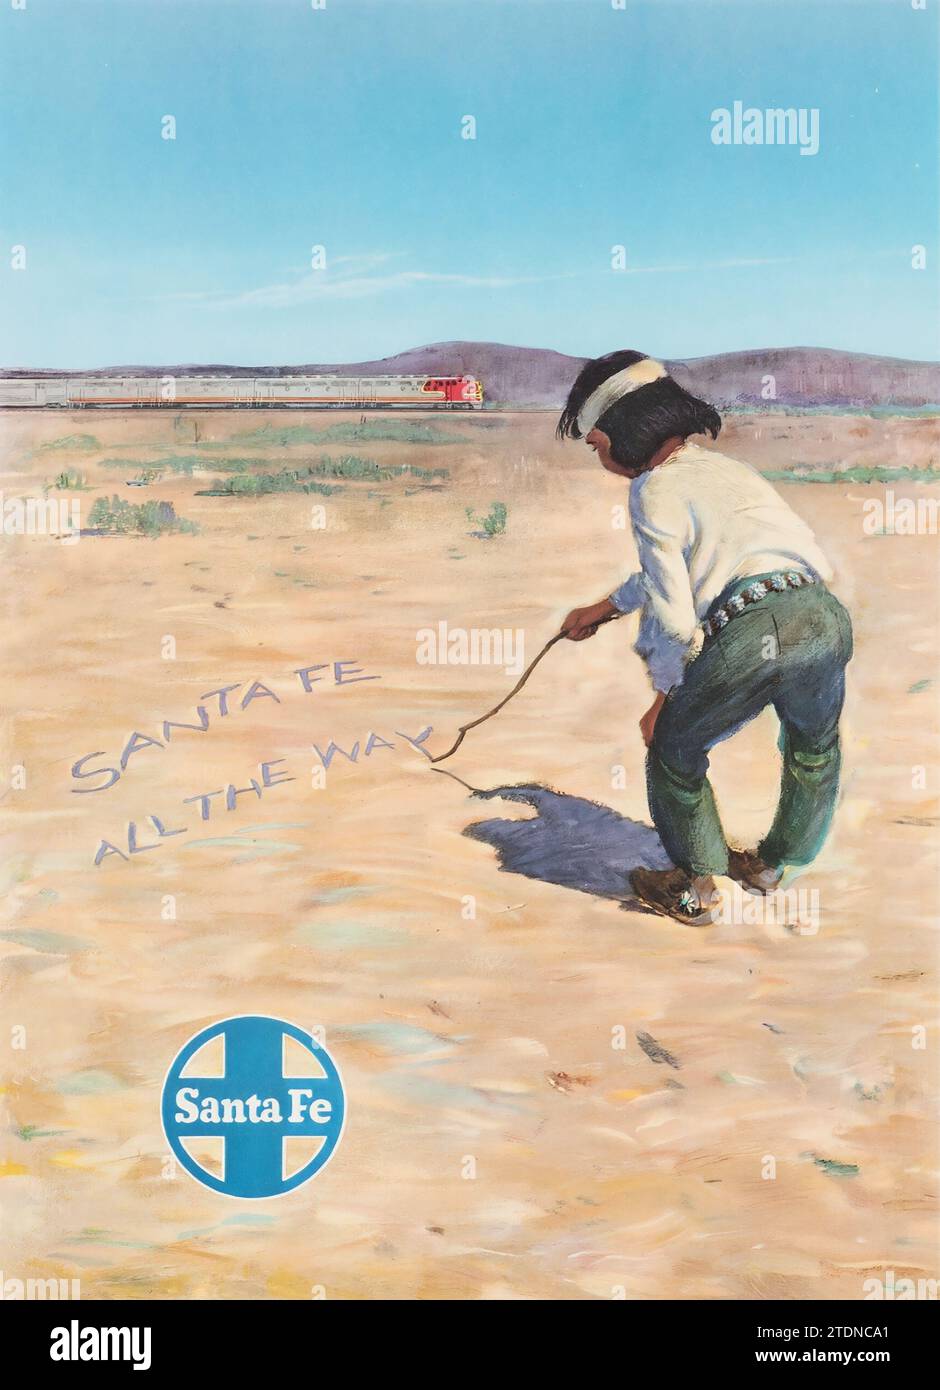 Santa Fe Railway - affiche de chemin de fer (début des années 1950). Affiche publicitaire - 'Santa Fe All the Way' Banque D'Images